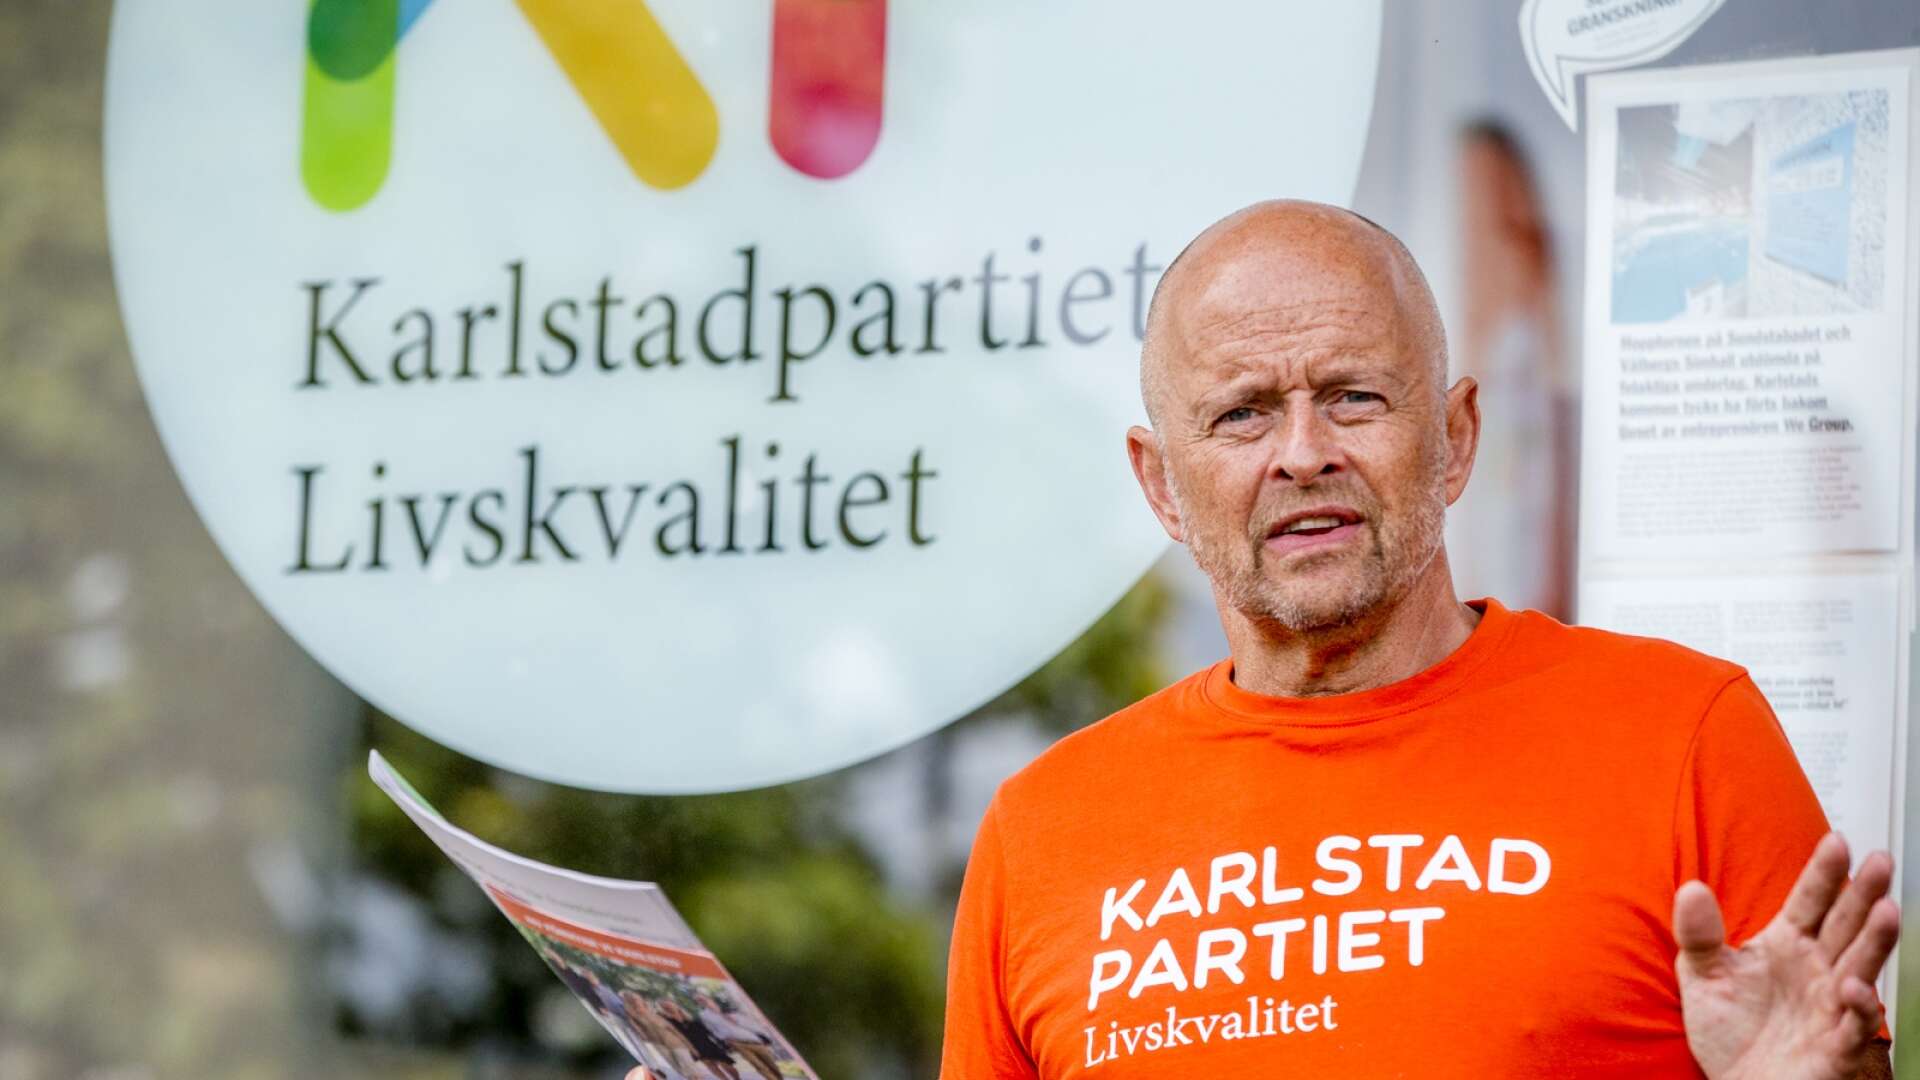 Socialdemokraterna i Karlstad vann tillbaka mandat i valet på att anpassa sig till Sörensens och Karlstadpartiets linje, menar debattören. 